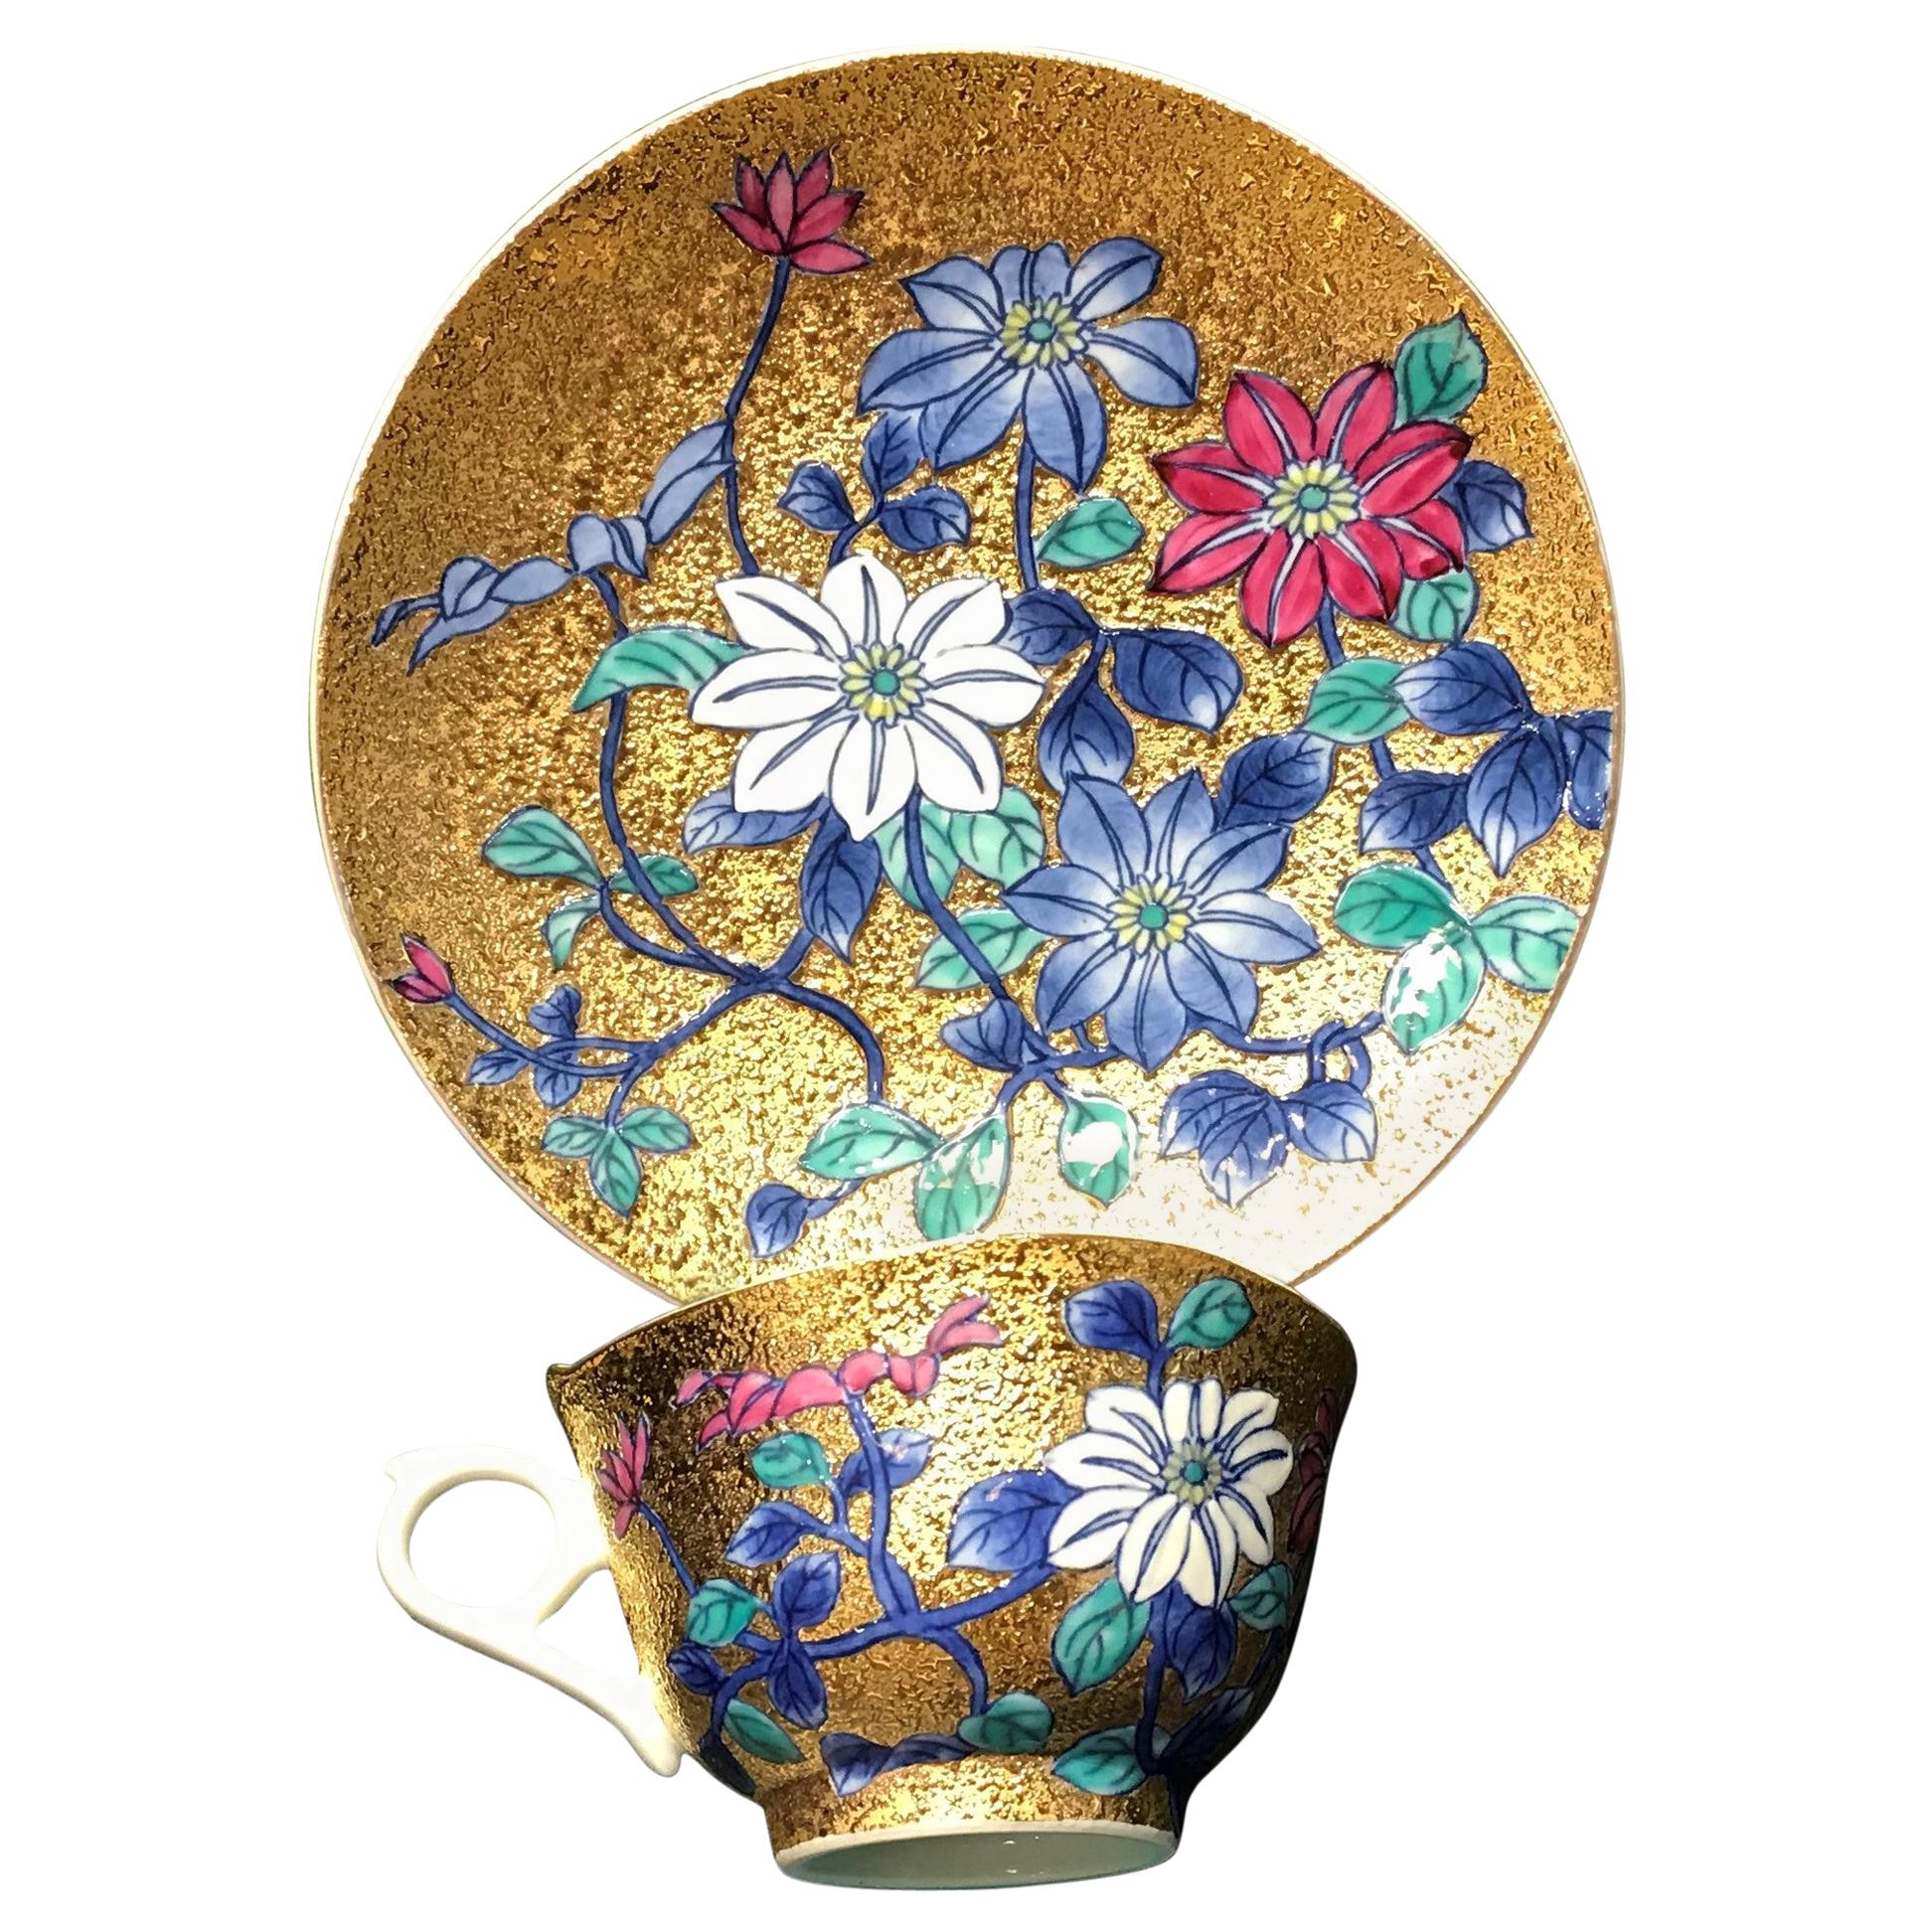 Japanischer Porzellanbecher und Untertasse aus Gold, Blau und Rot von zeitgenössischem Meisterkünstler, 2